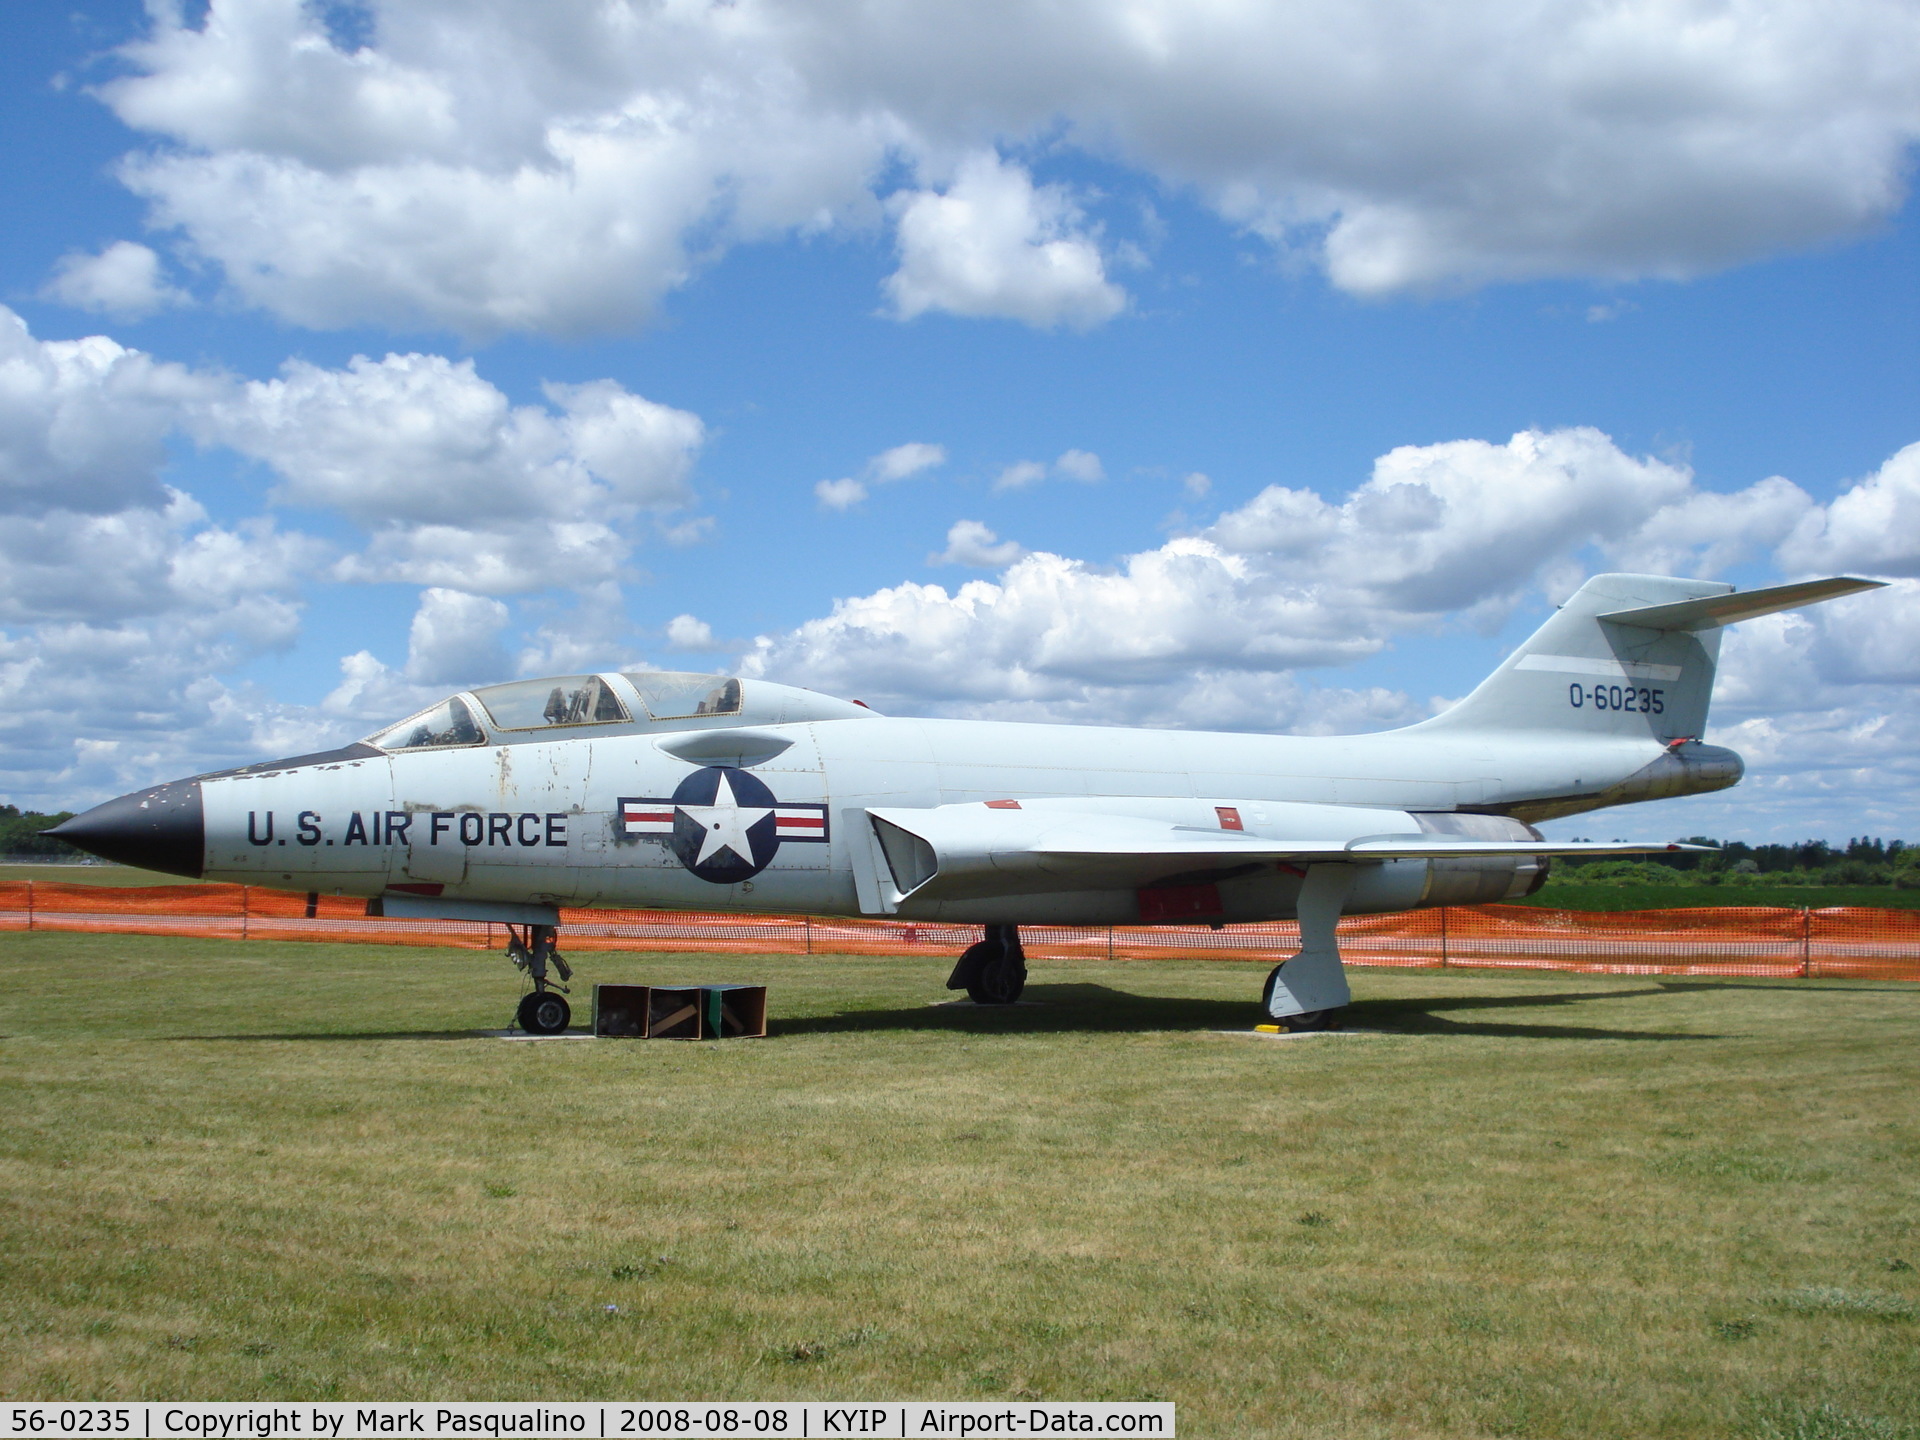 56-0235, 1956 McDonnell F-101B Voodoo C/N 128, Mc Donnell F-101B